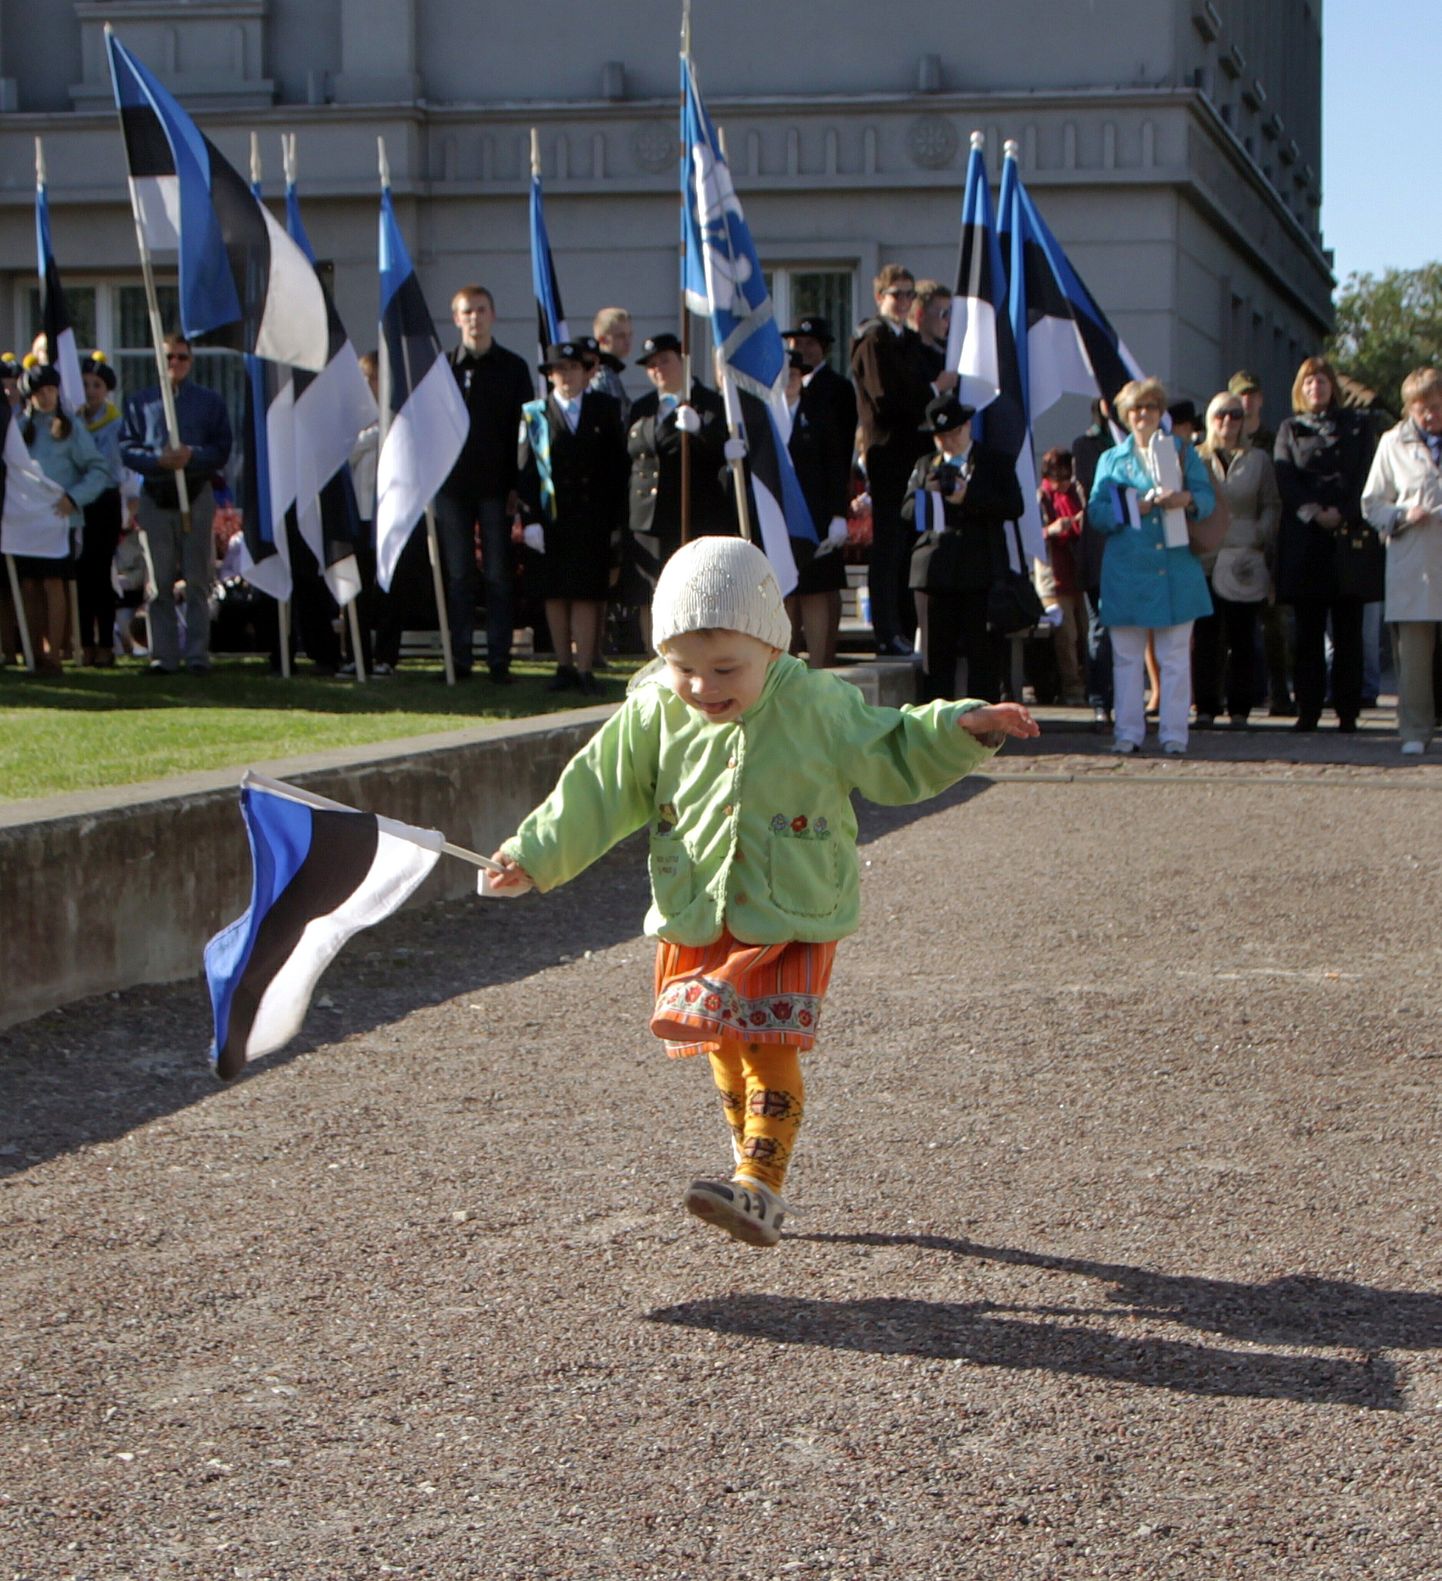 Eesti lipu 128. aastapäeva tähistati Pärnus kõnekoosoleku ja kontserdiga Rüütli platsil ja Vallikäärus.